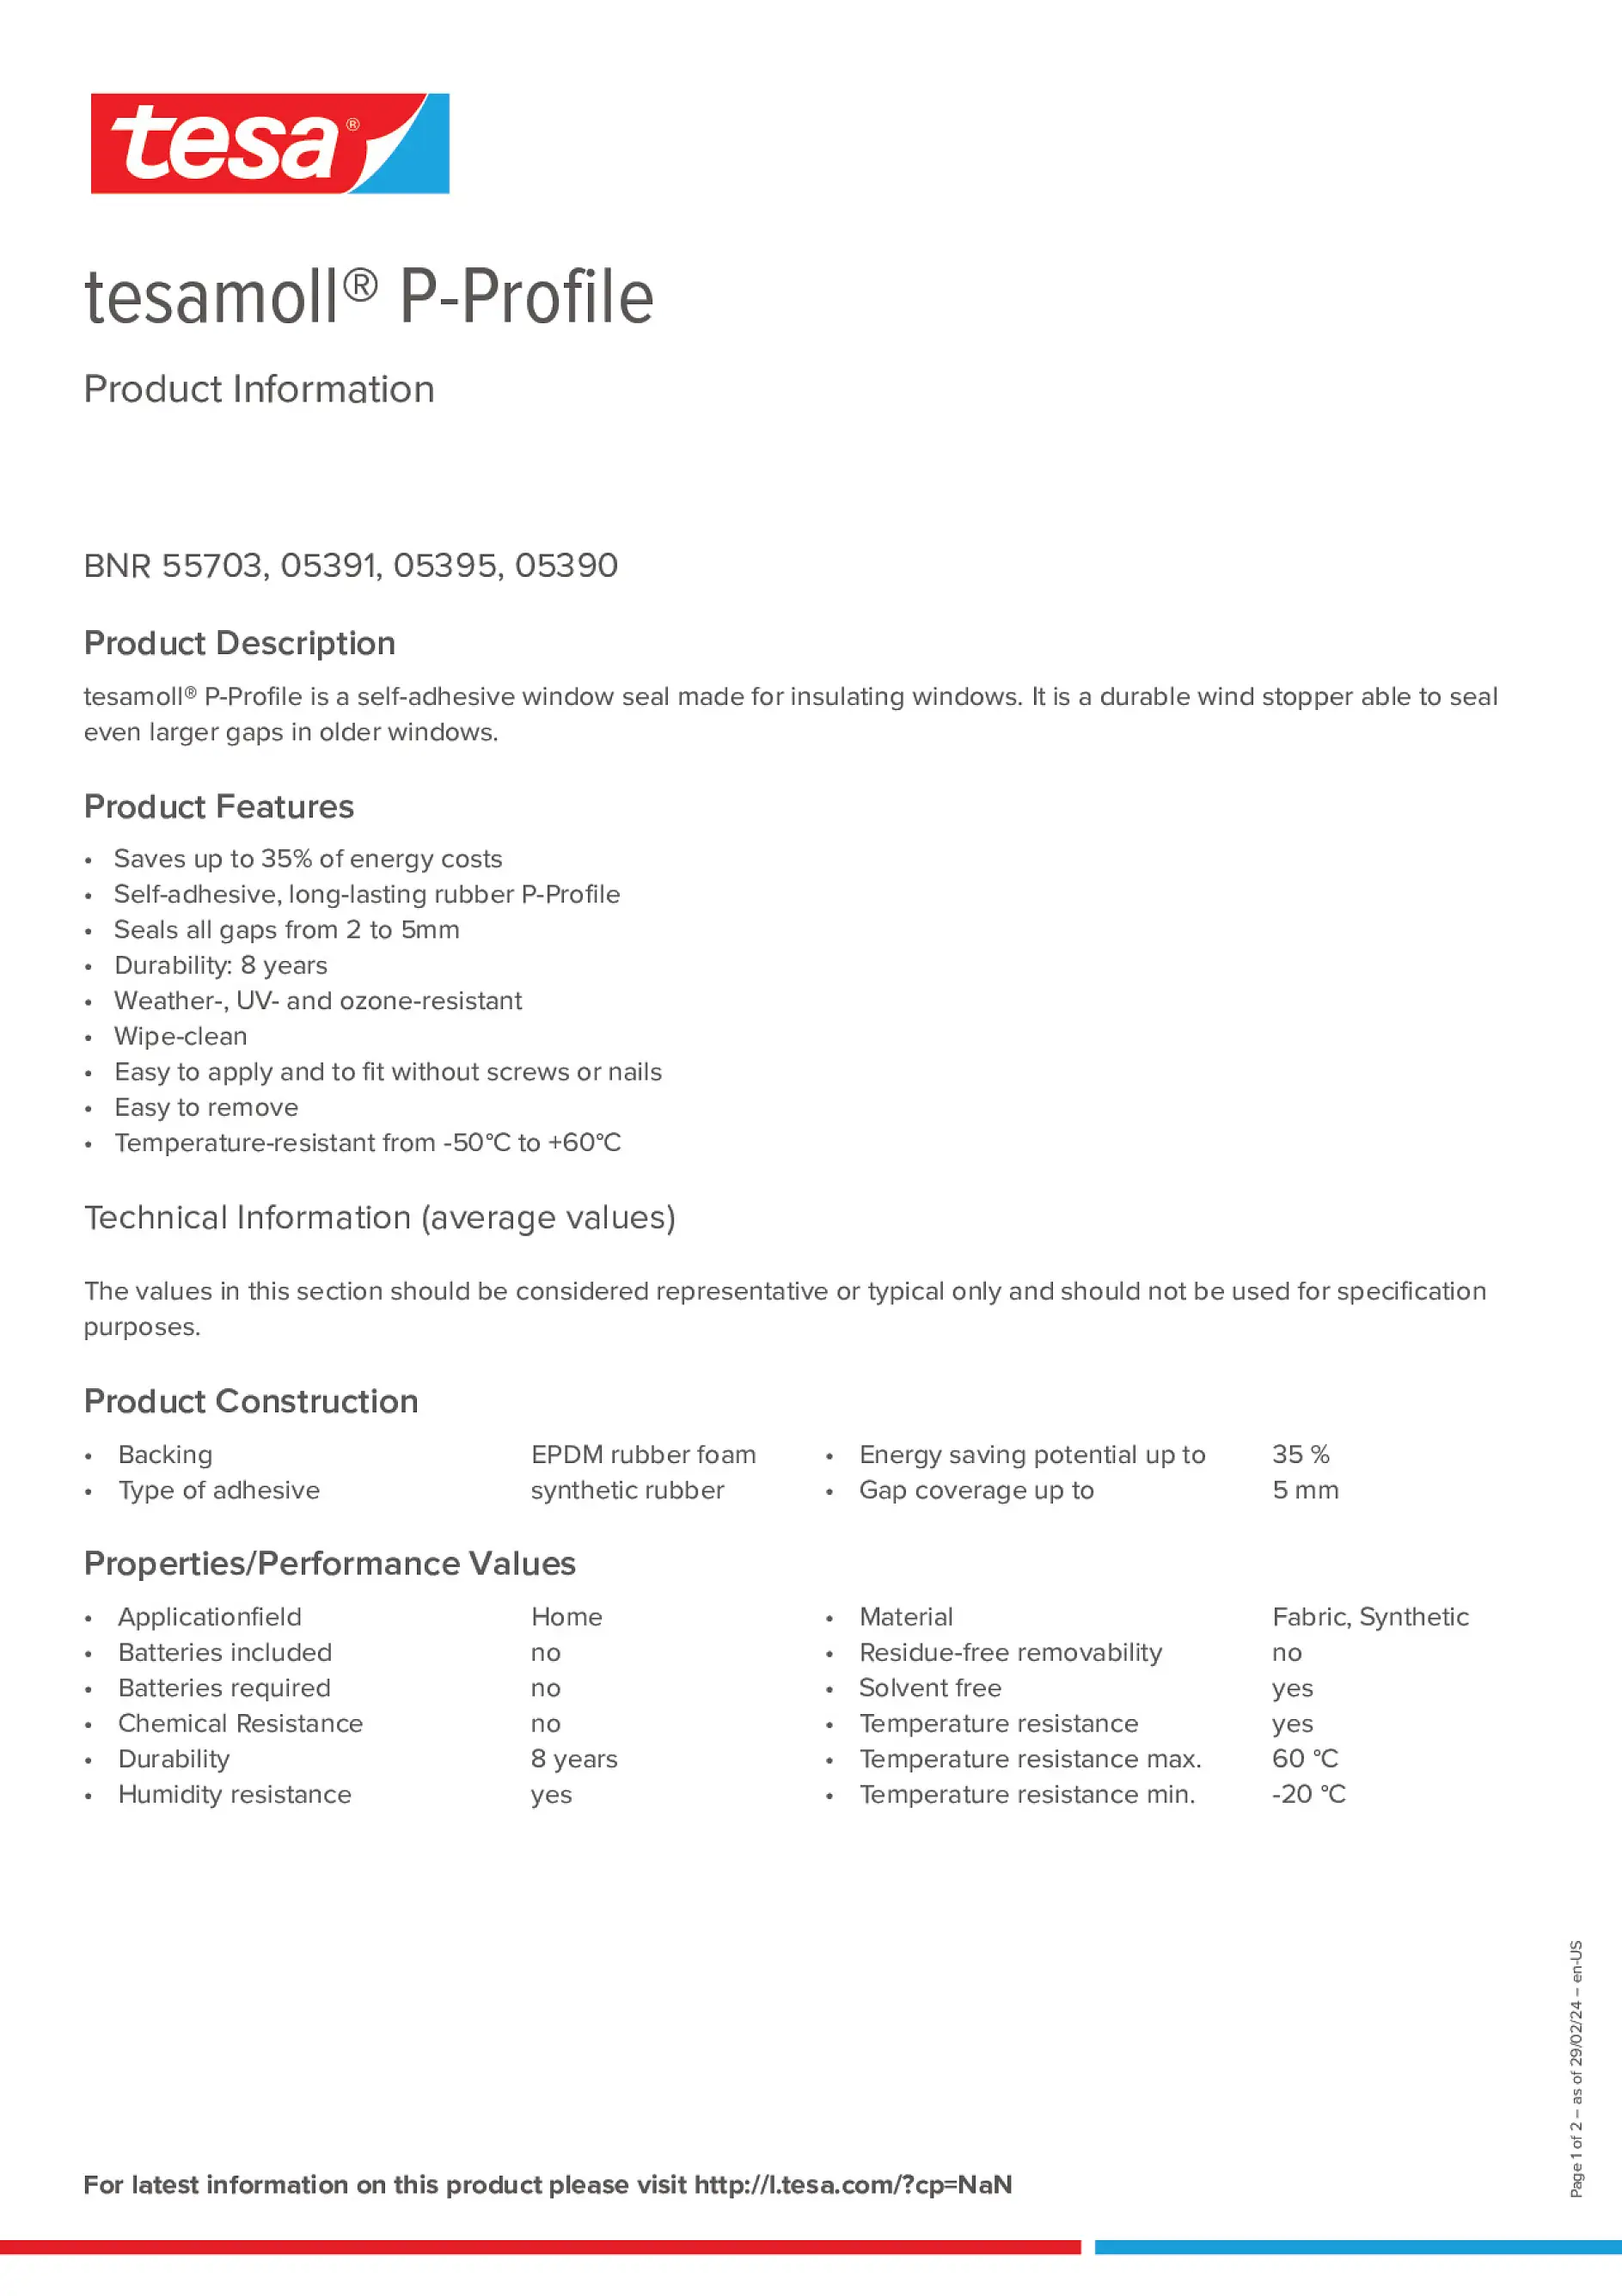 Product information_tesamoll® 5366_en